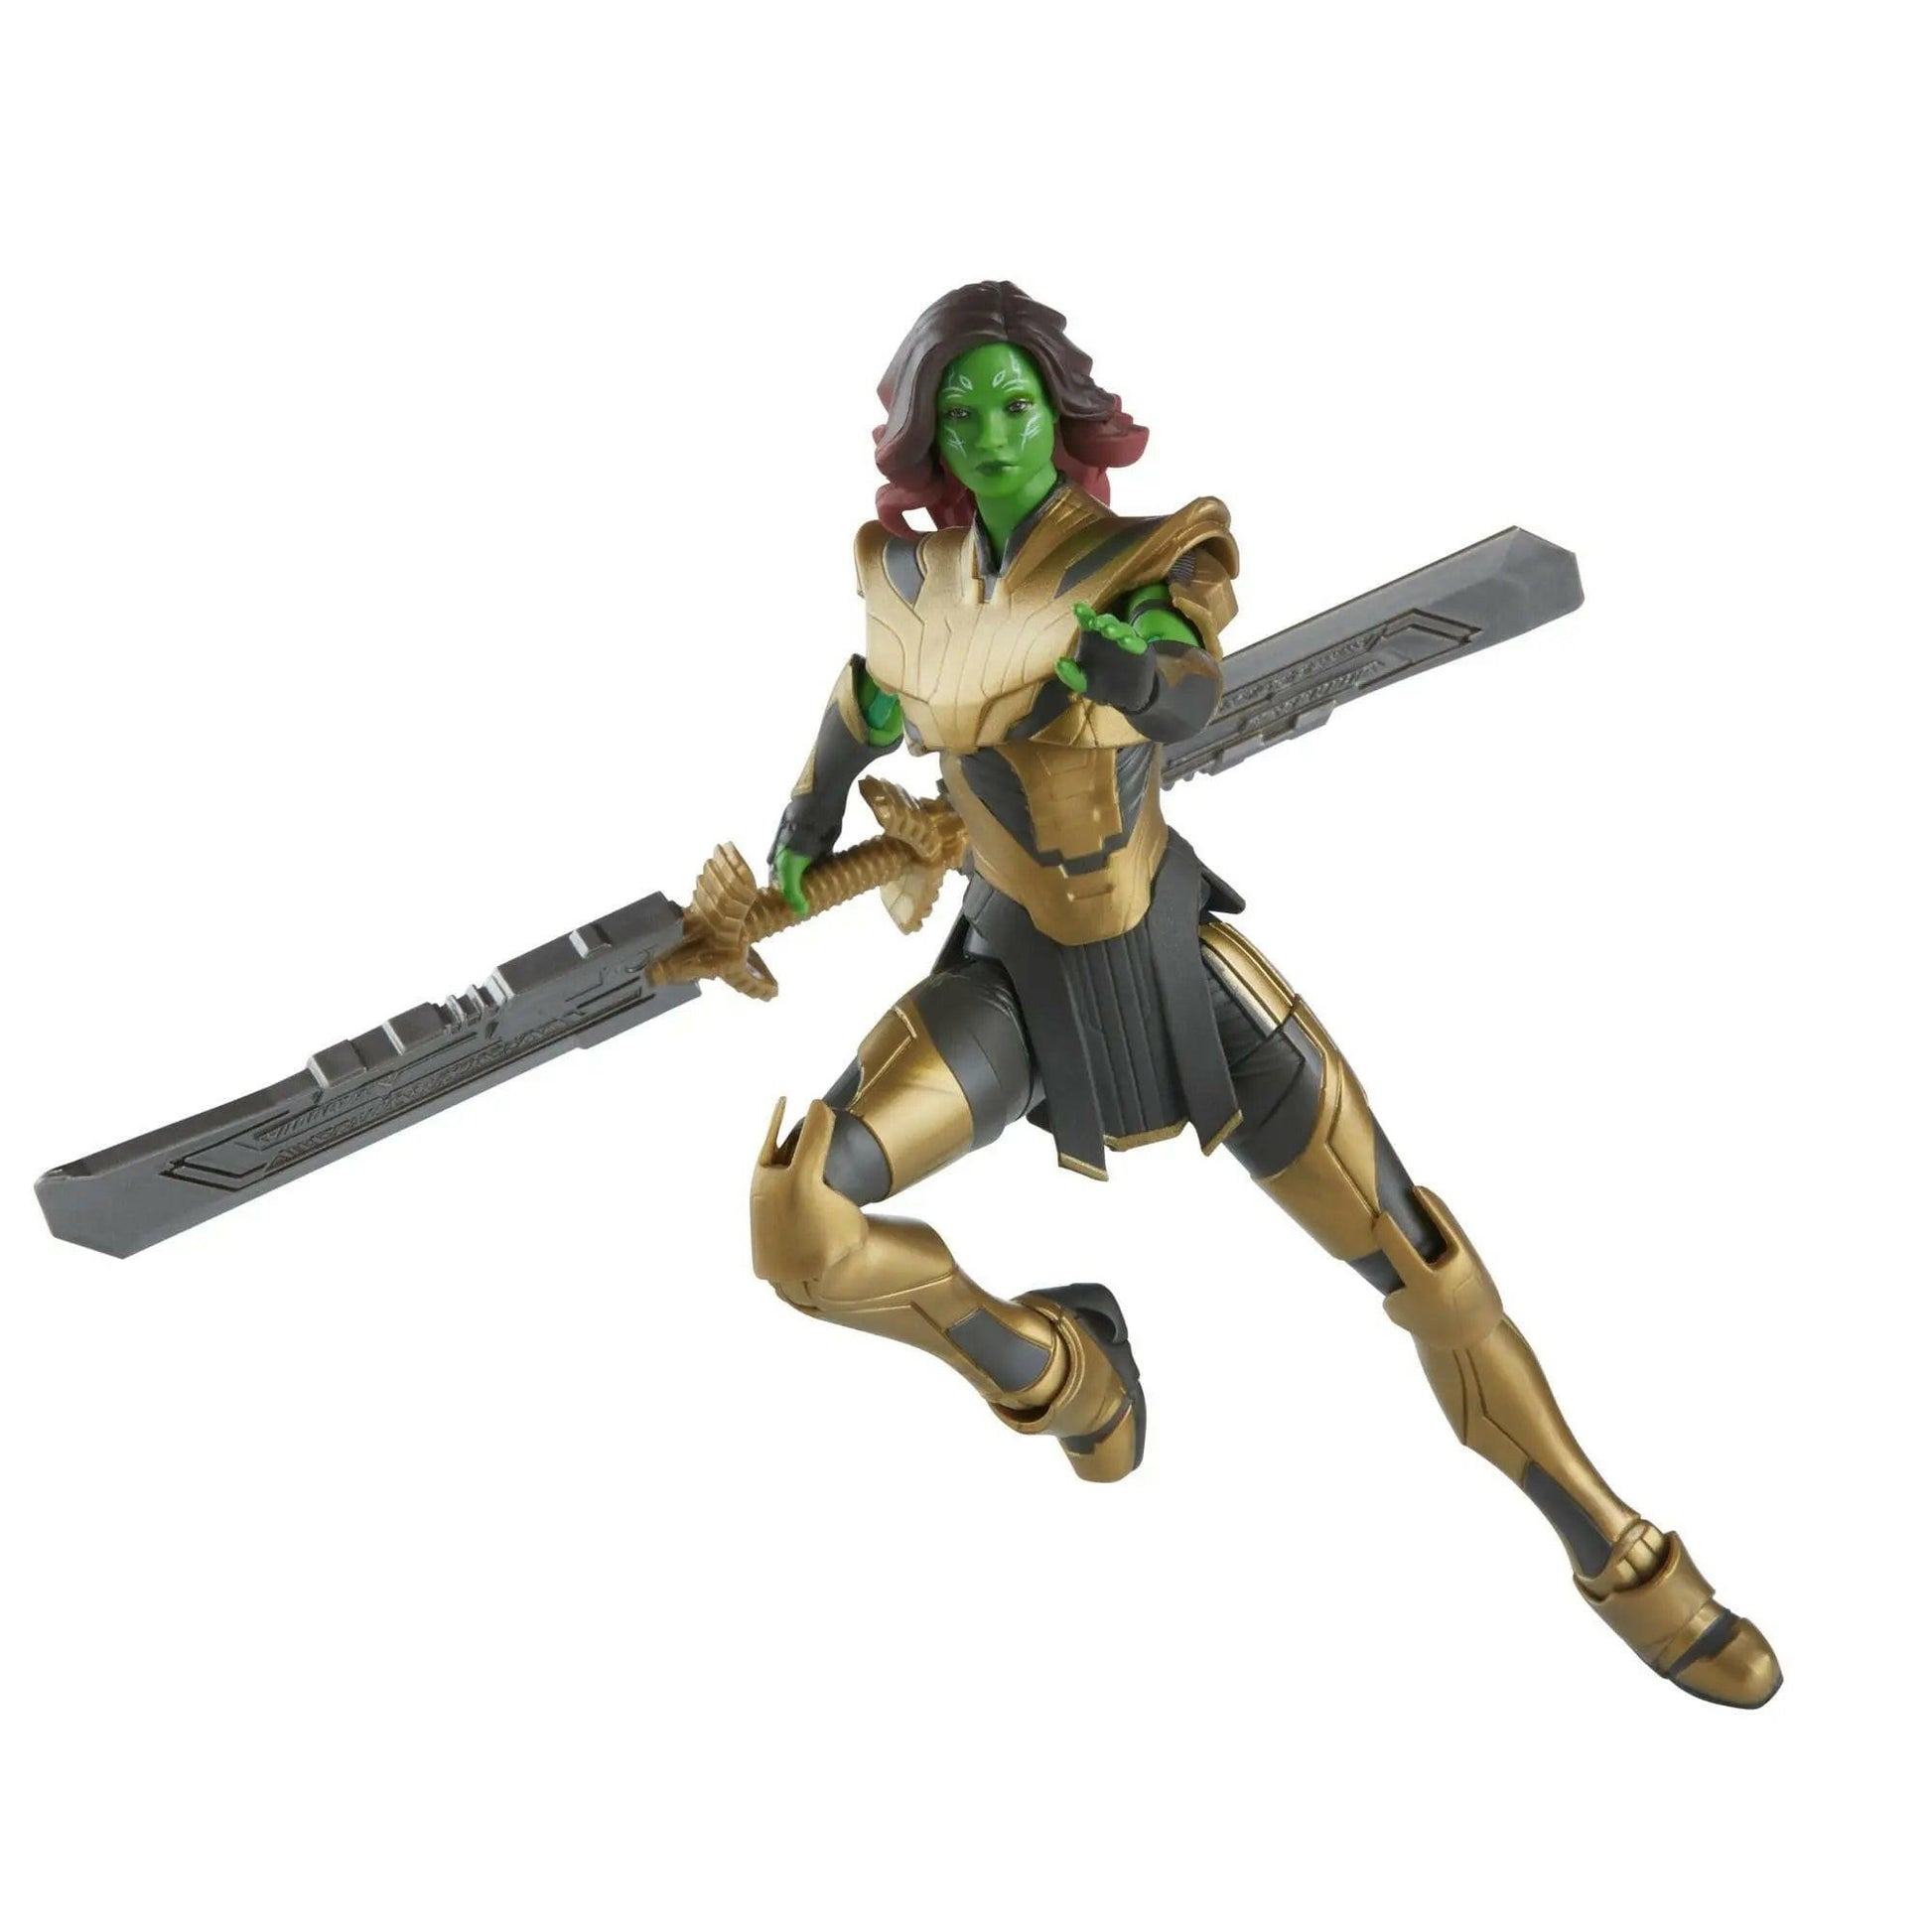 Marvel Legends What If...? Actionfigur Warrior Gamora (BAF: Hydra Stomper) 15cm - Toy-Storage